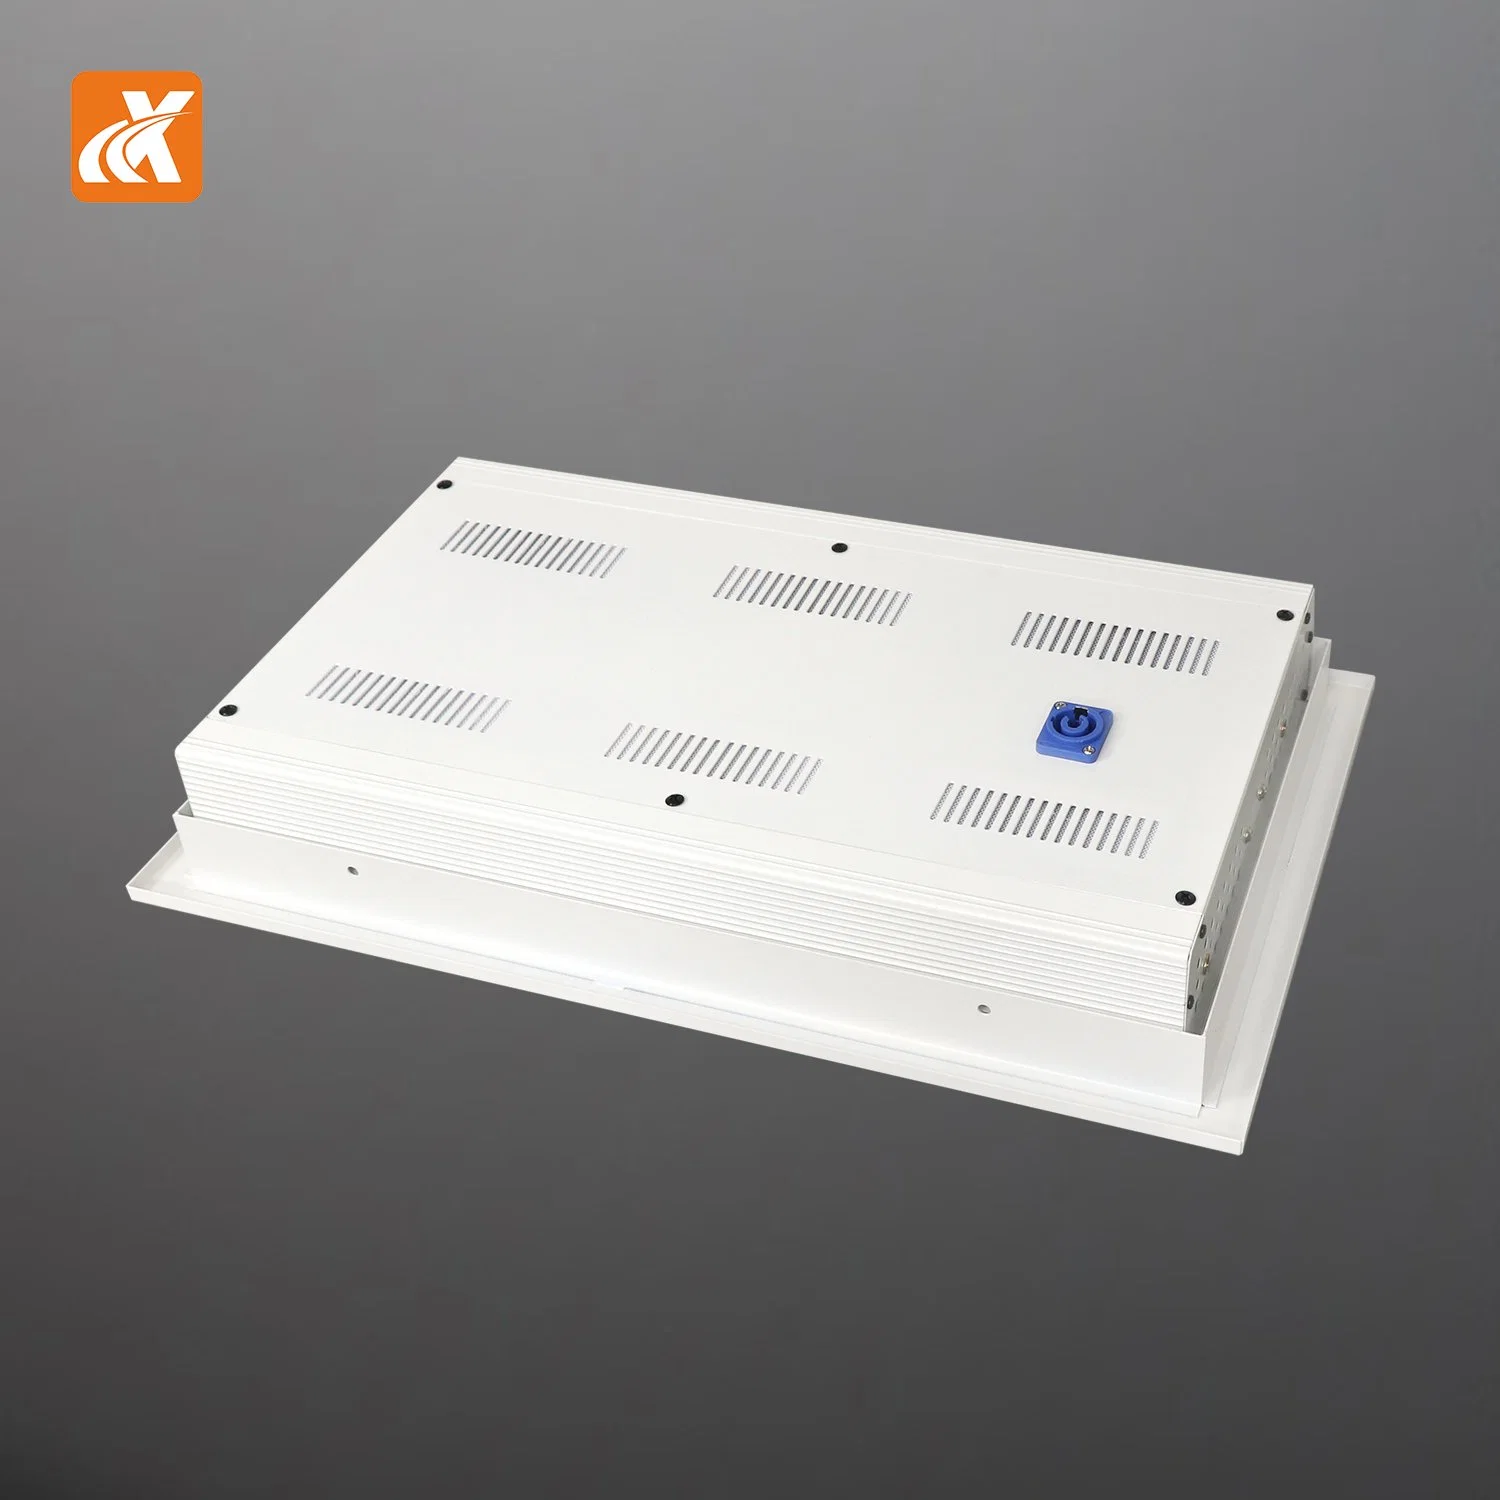 LED-Q100 CE RoHS цена на заводе Professional DMX512 для разработчиков встраиваемых систем поверхность лампы светодиодная панель этапе лампа Studio лампа Зал вещания глаза лампы